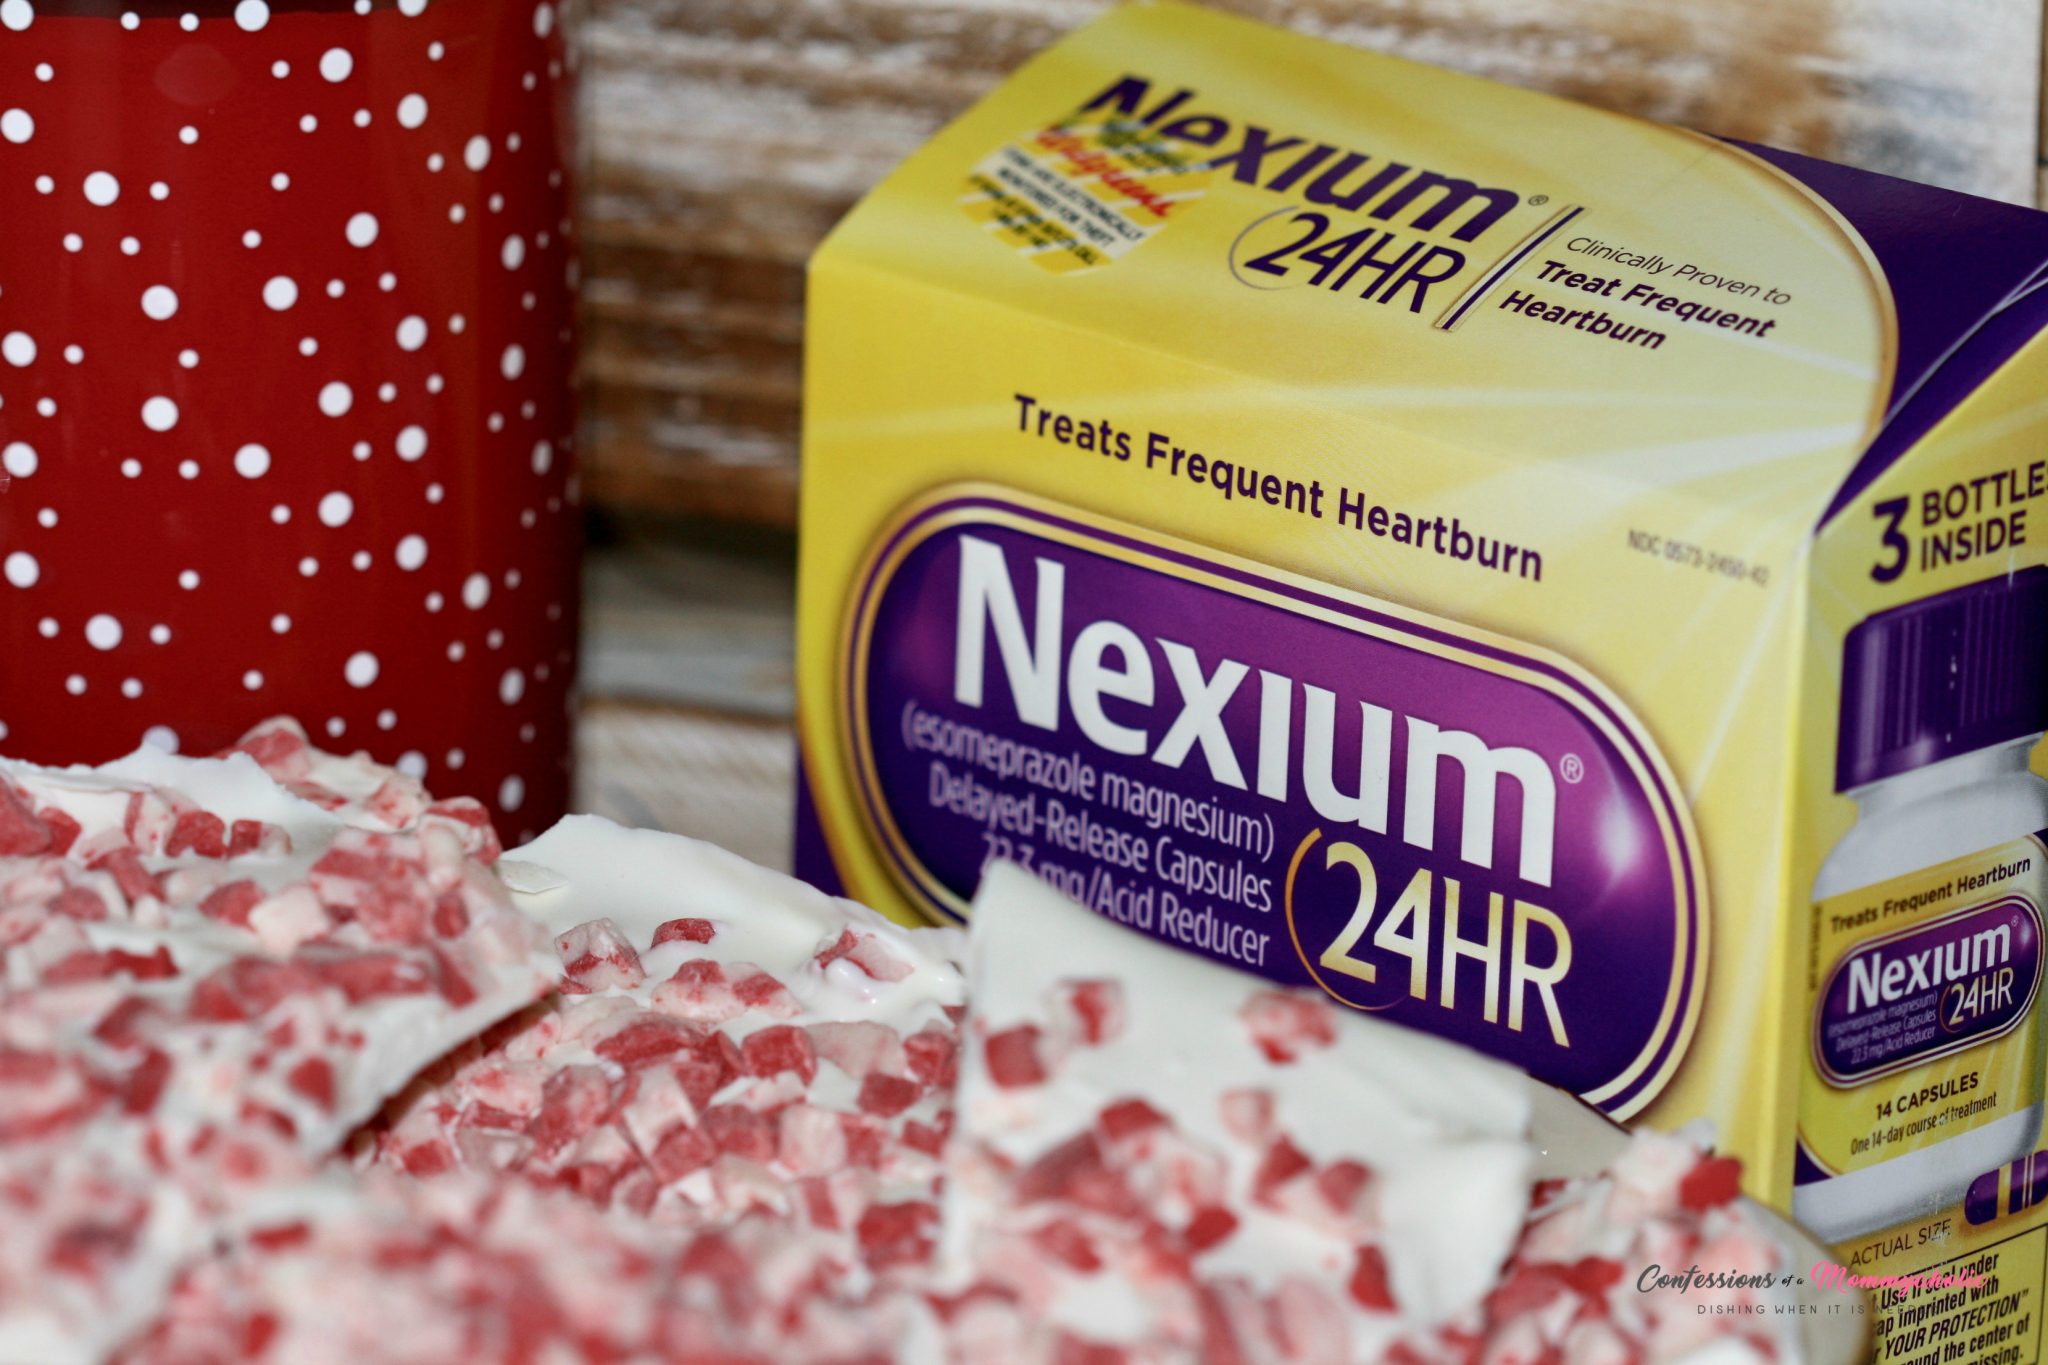 white-chocolate-peppermint-bark-and-nexium-capsules-box